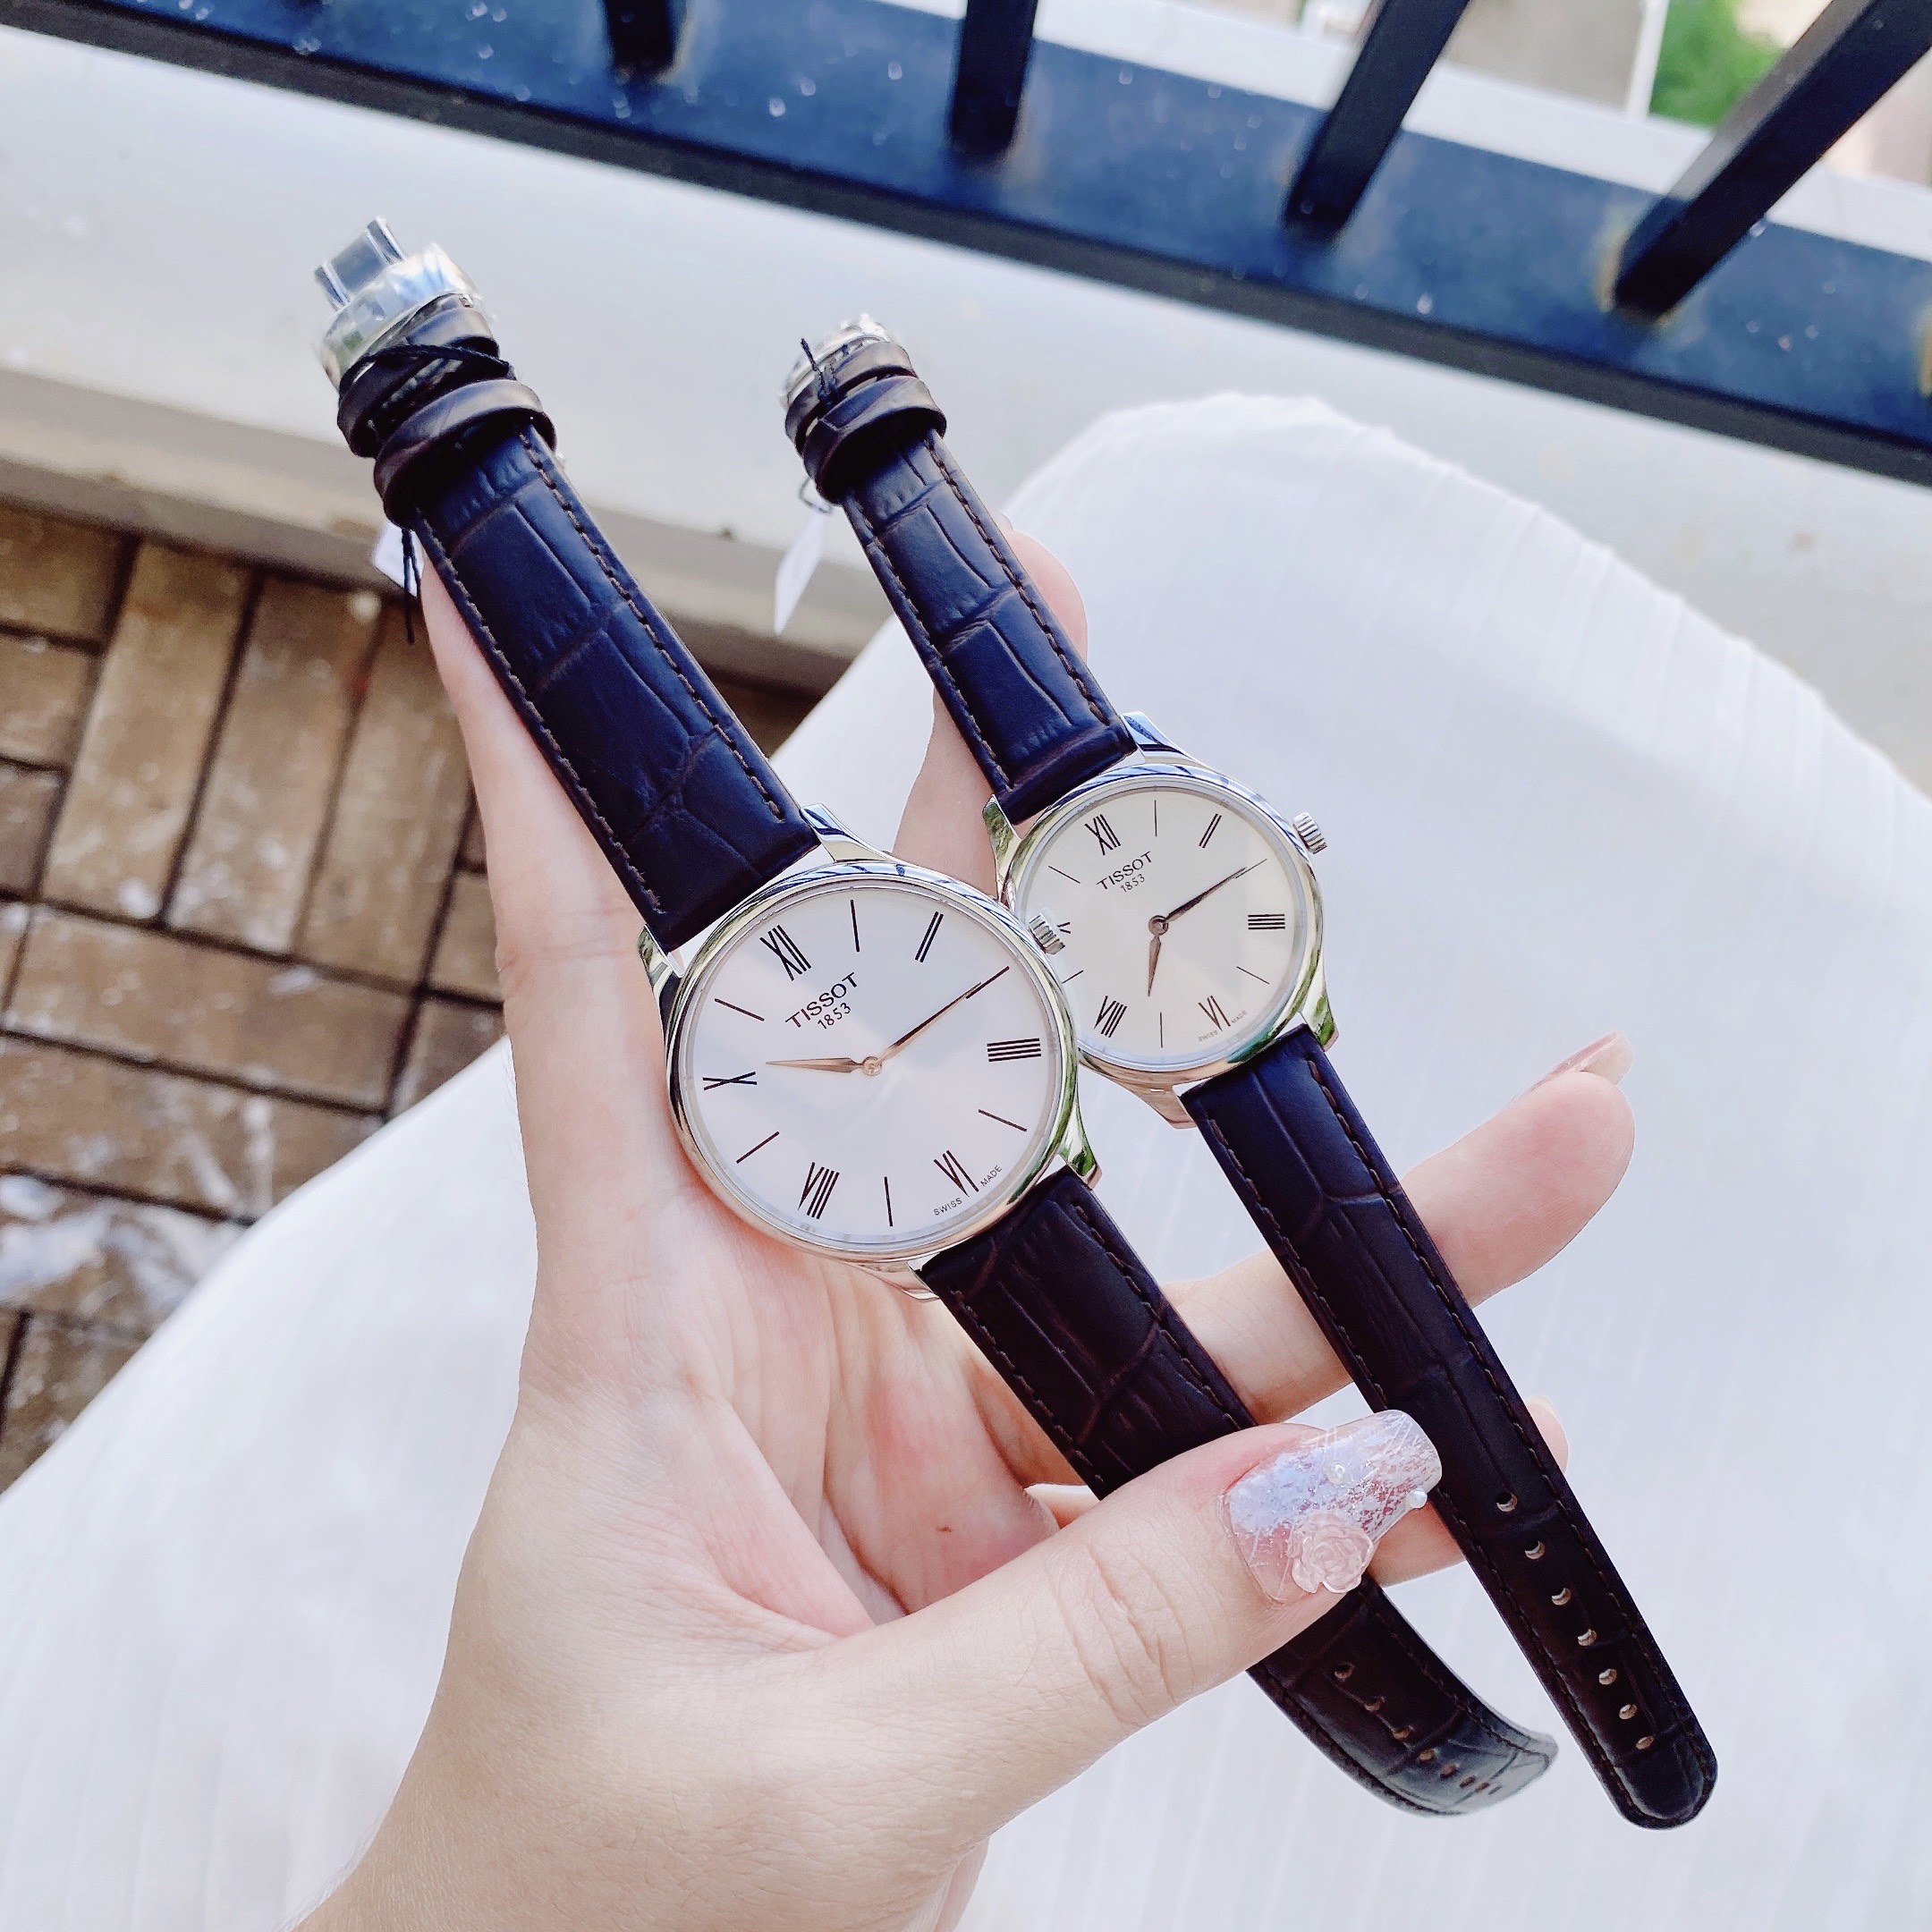 Mẫu đồng hồ Tissot hàng hiệu khẳng định “Gu” cá tính, ưu đãi đến 30%